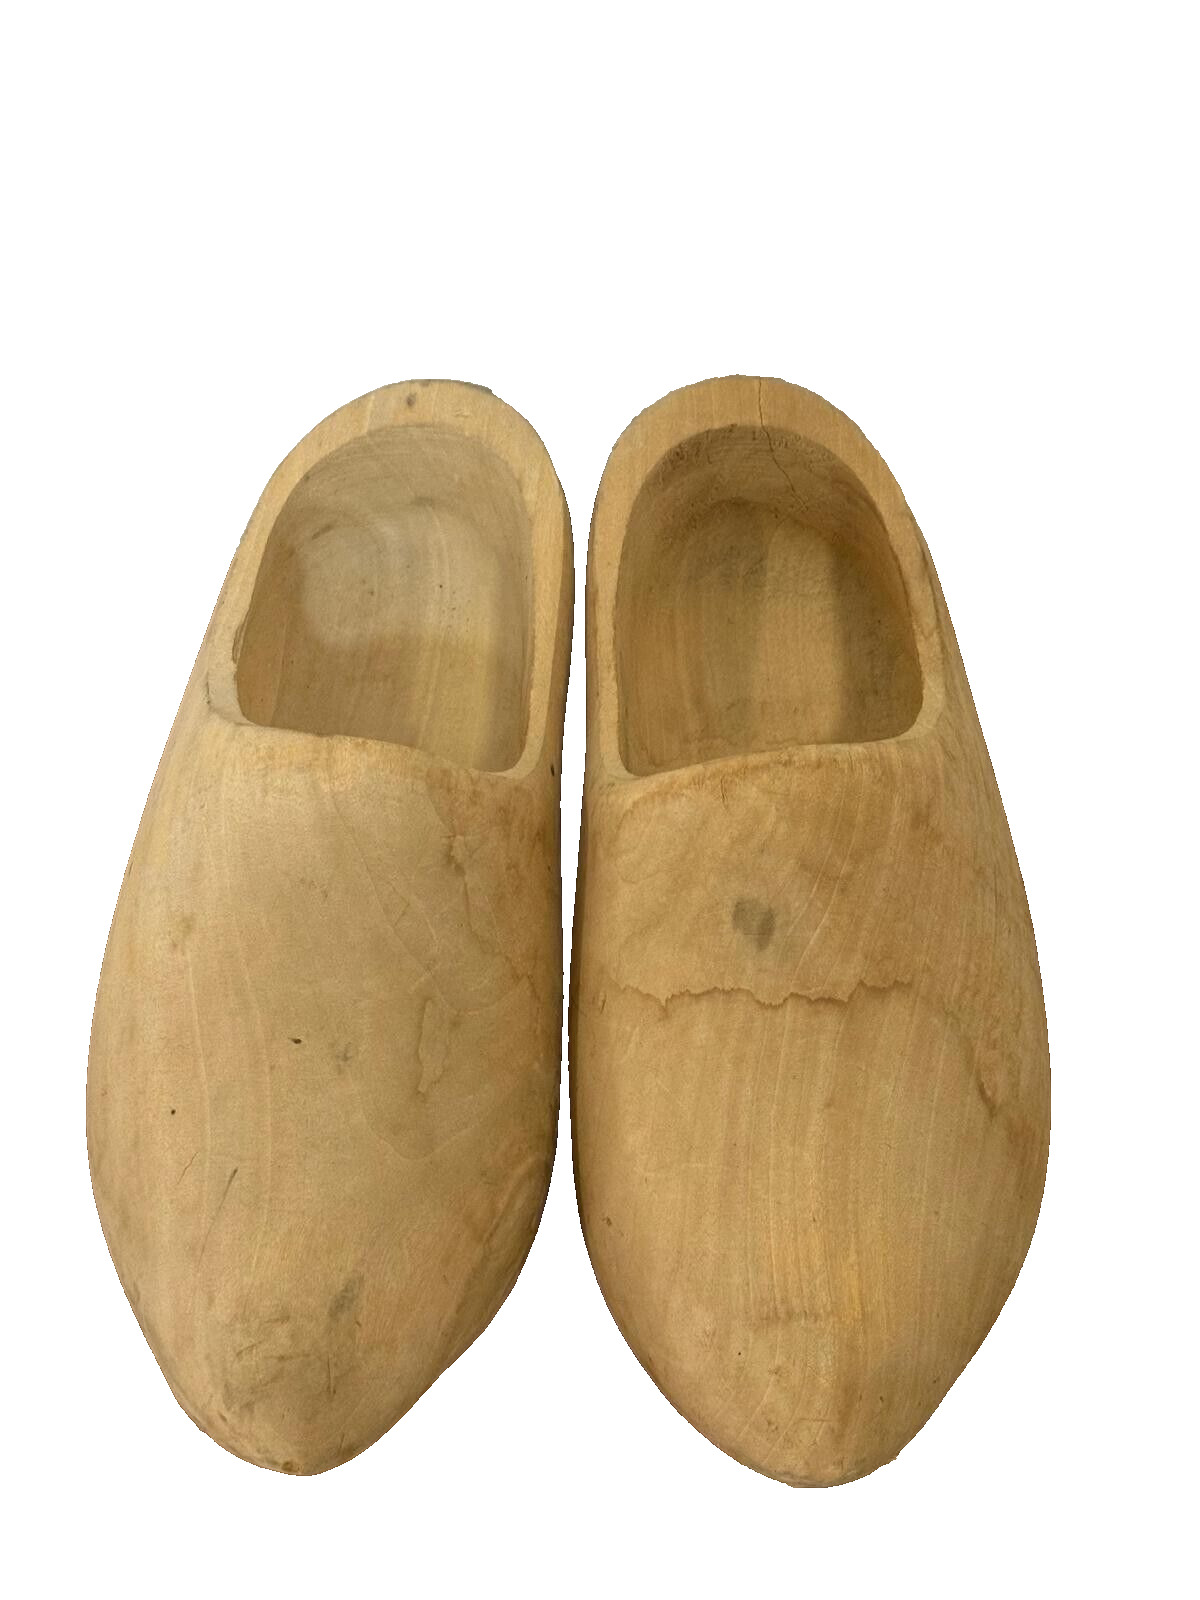 Vintage Wooden Sculpture carved Handmade Shape Shoes